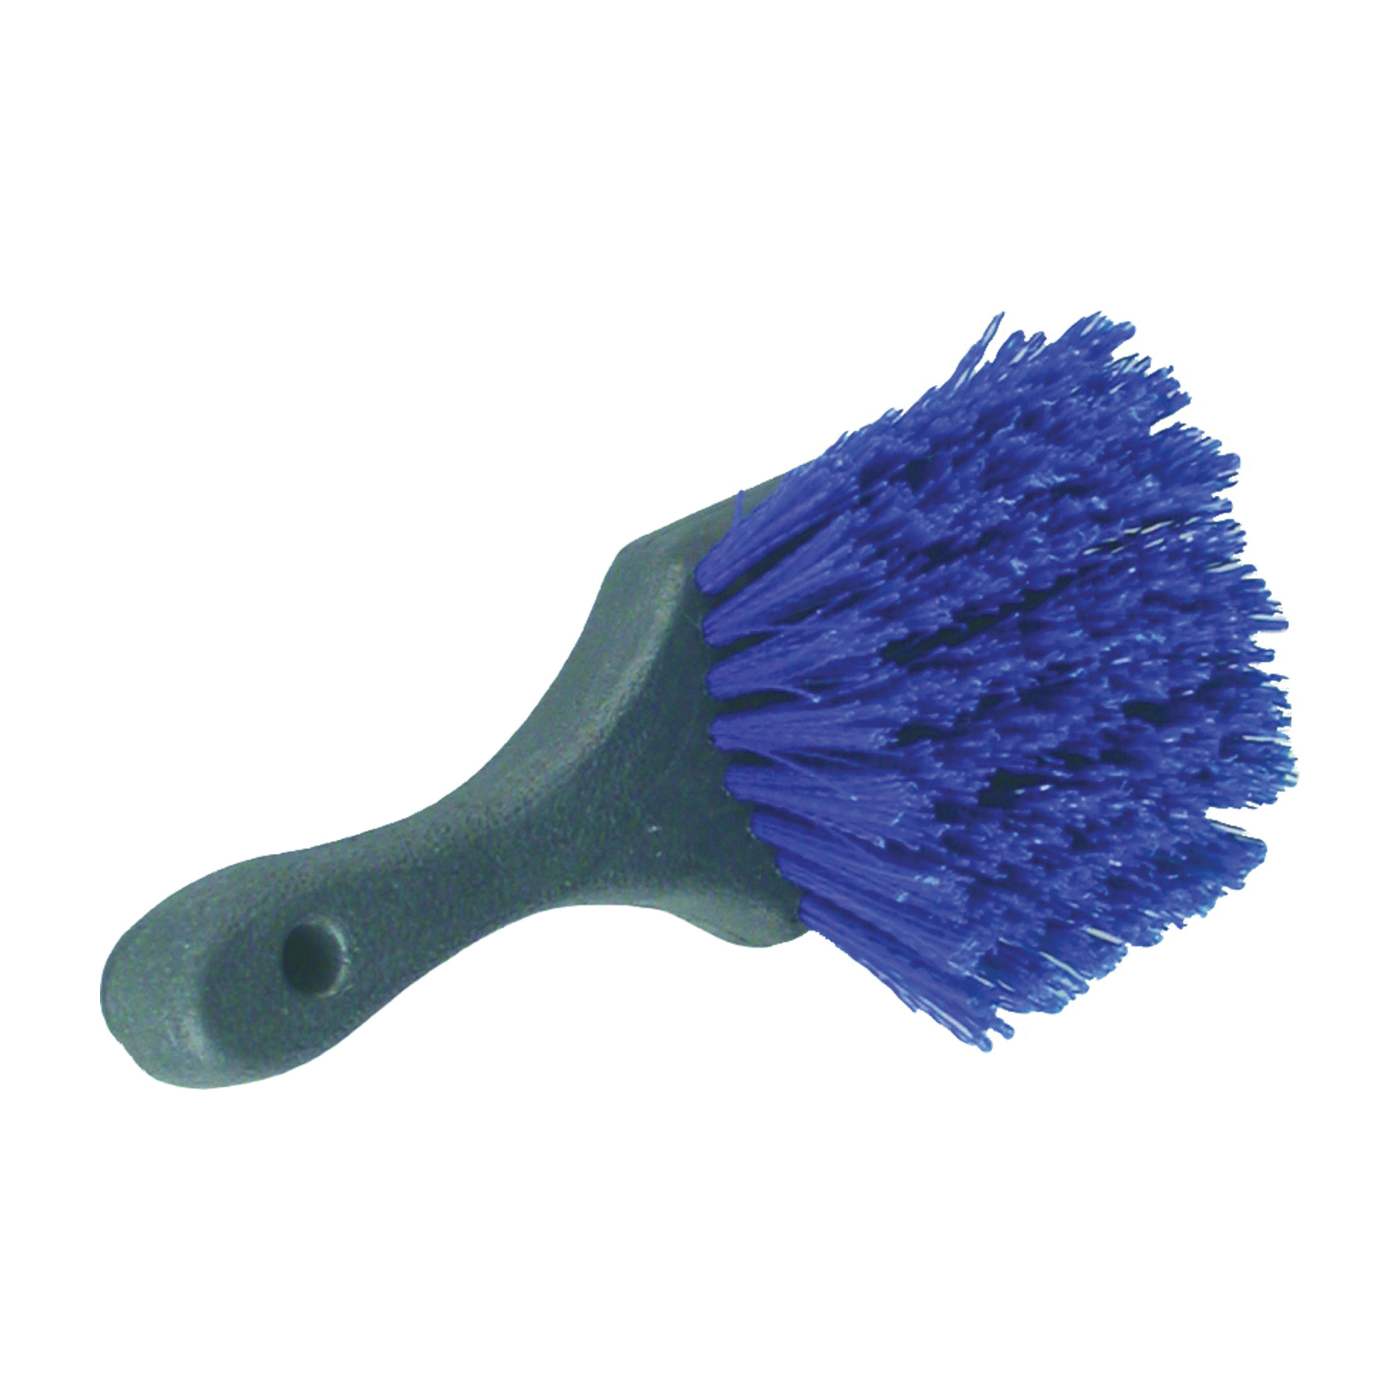 465-24 Utility Brush, 2 in L Trim